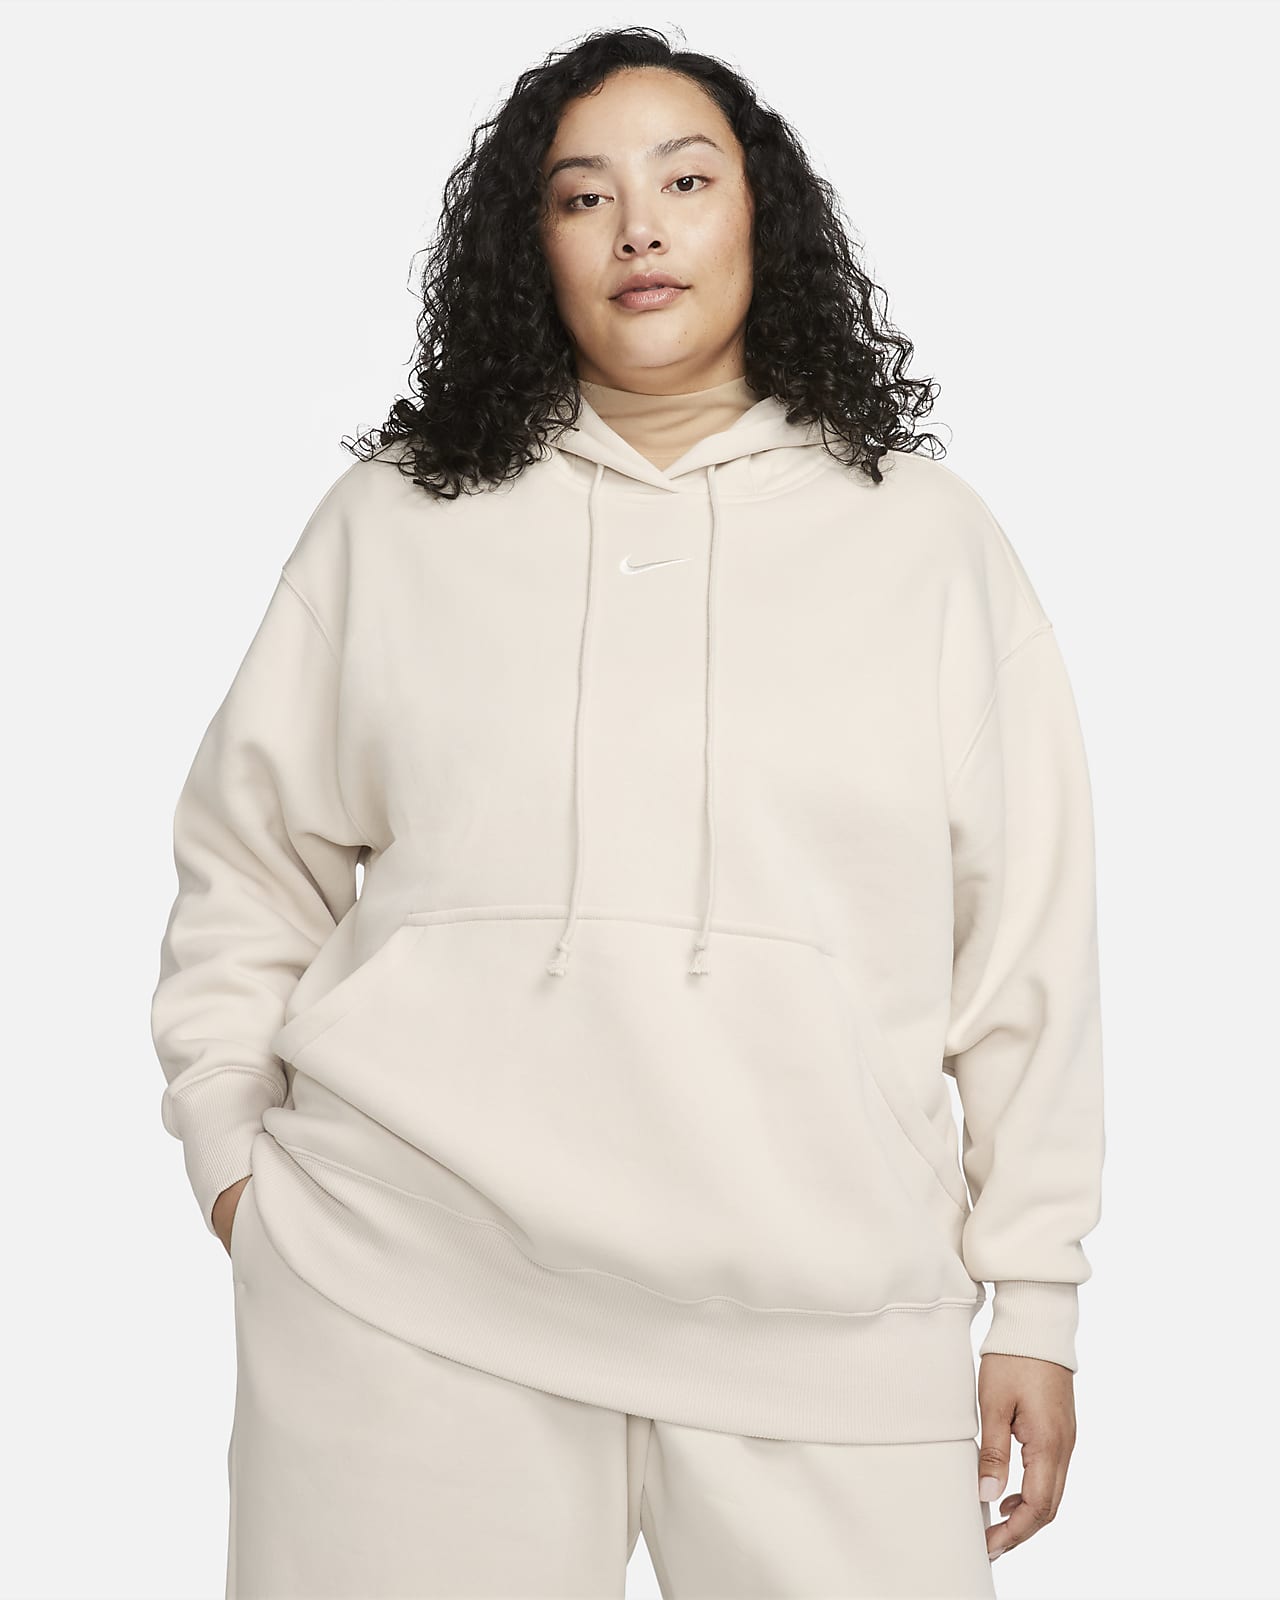 Nike Sportswear Phoenix Fleece Bol Kesimli Kadın Kapüşonlu Sweatshirt'ü (Büyük Beden)